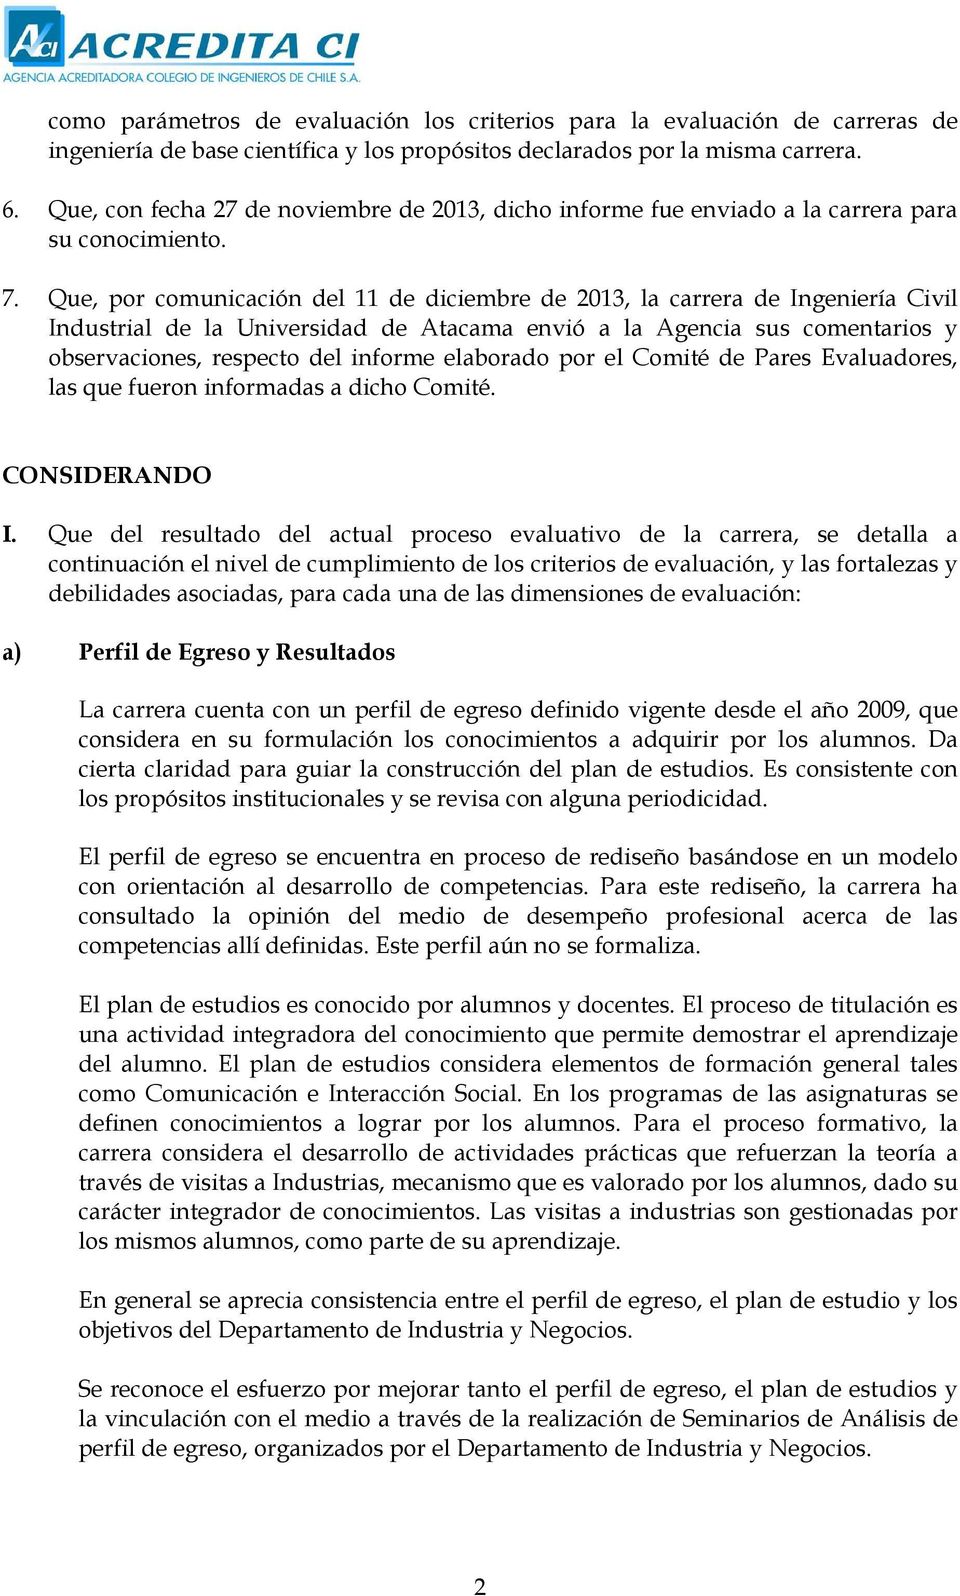 Que, por comunicación del 11 de diciembre de 2013, la carrera de Ingeniería Civil Industrial de la Universidad de Atacama envió a la Agencia sus comentarios y observaciones, respecto del informe